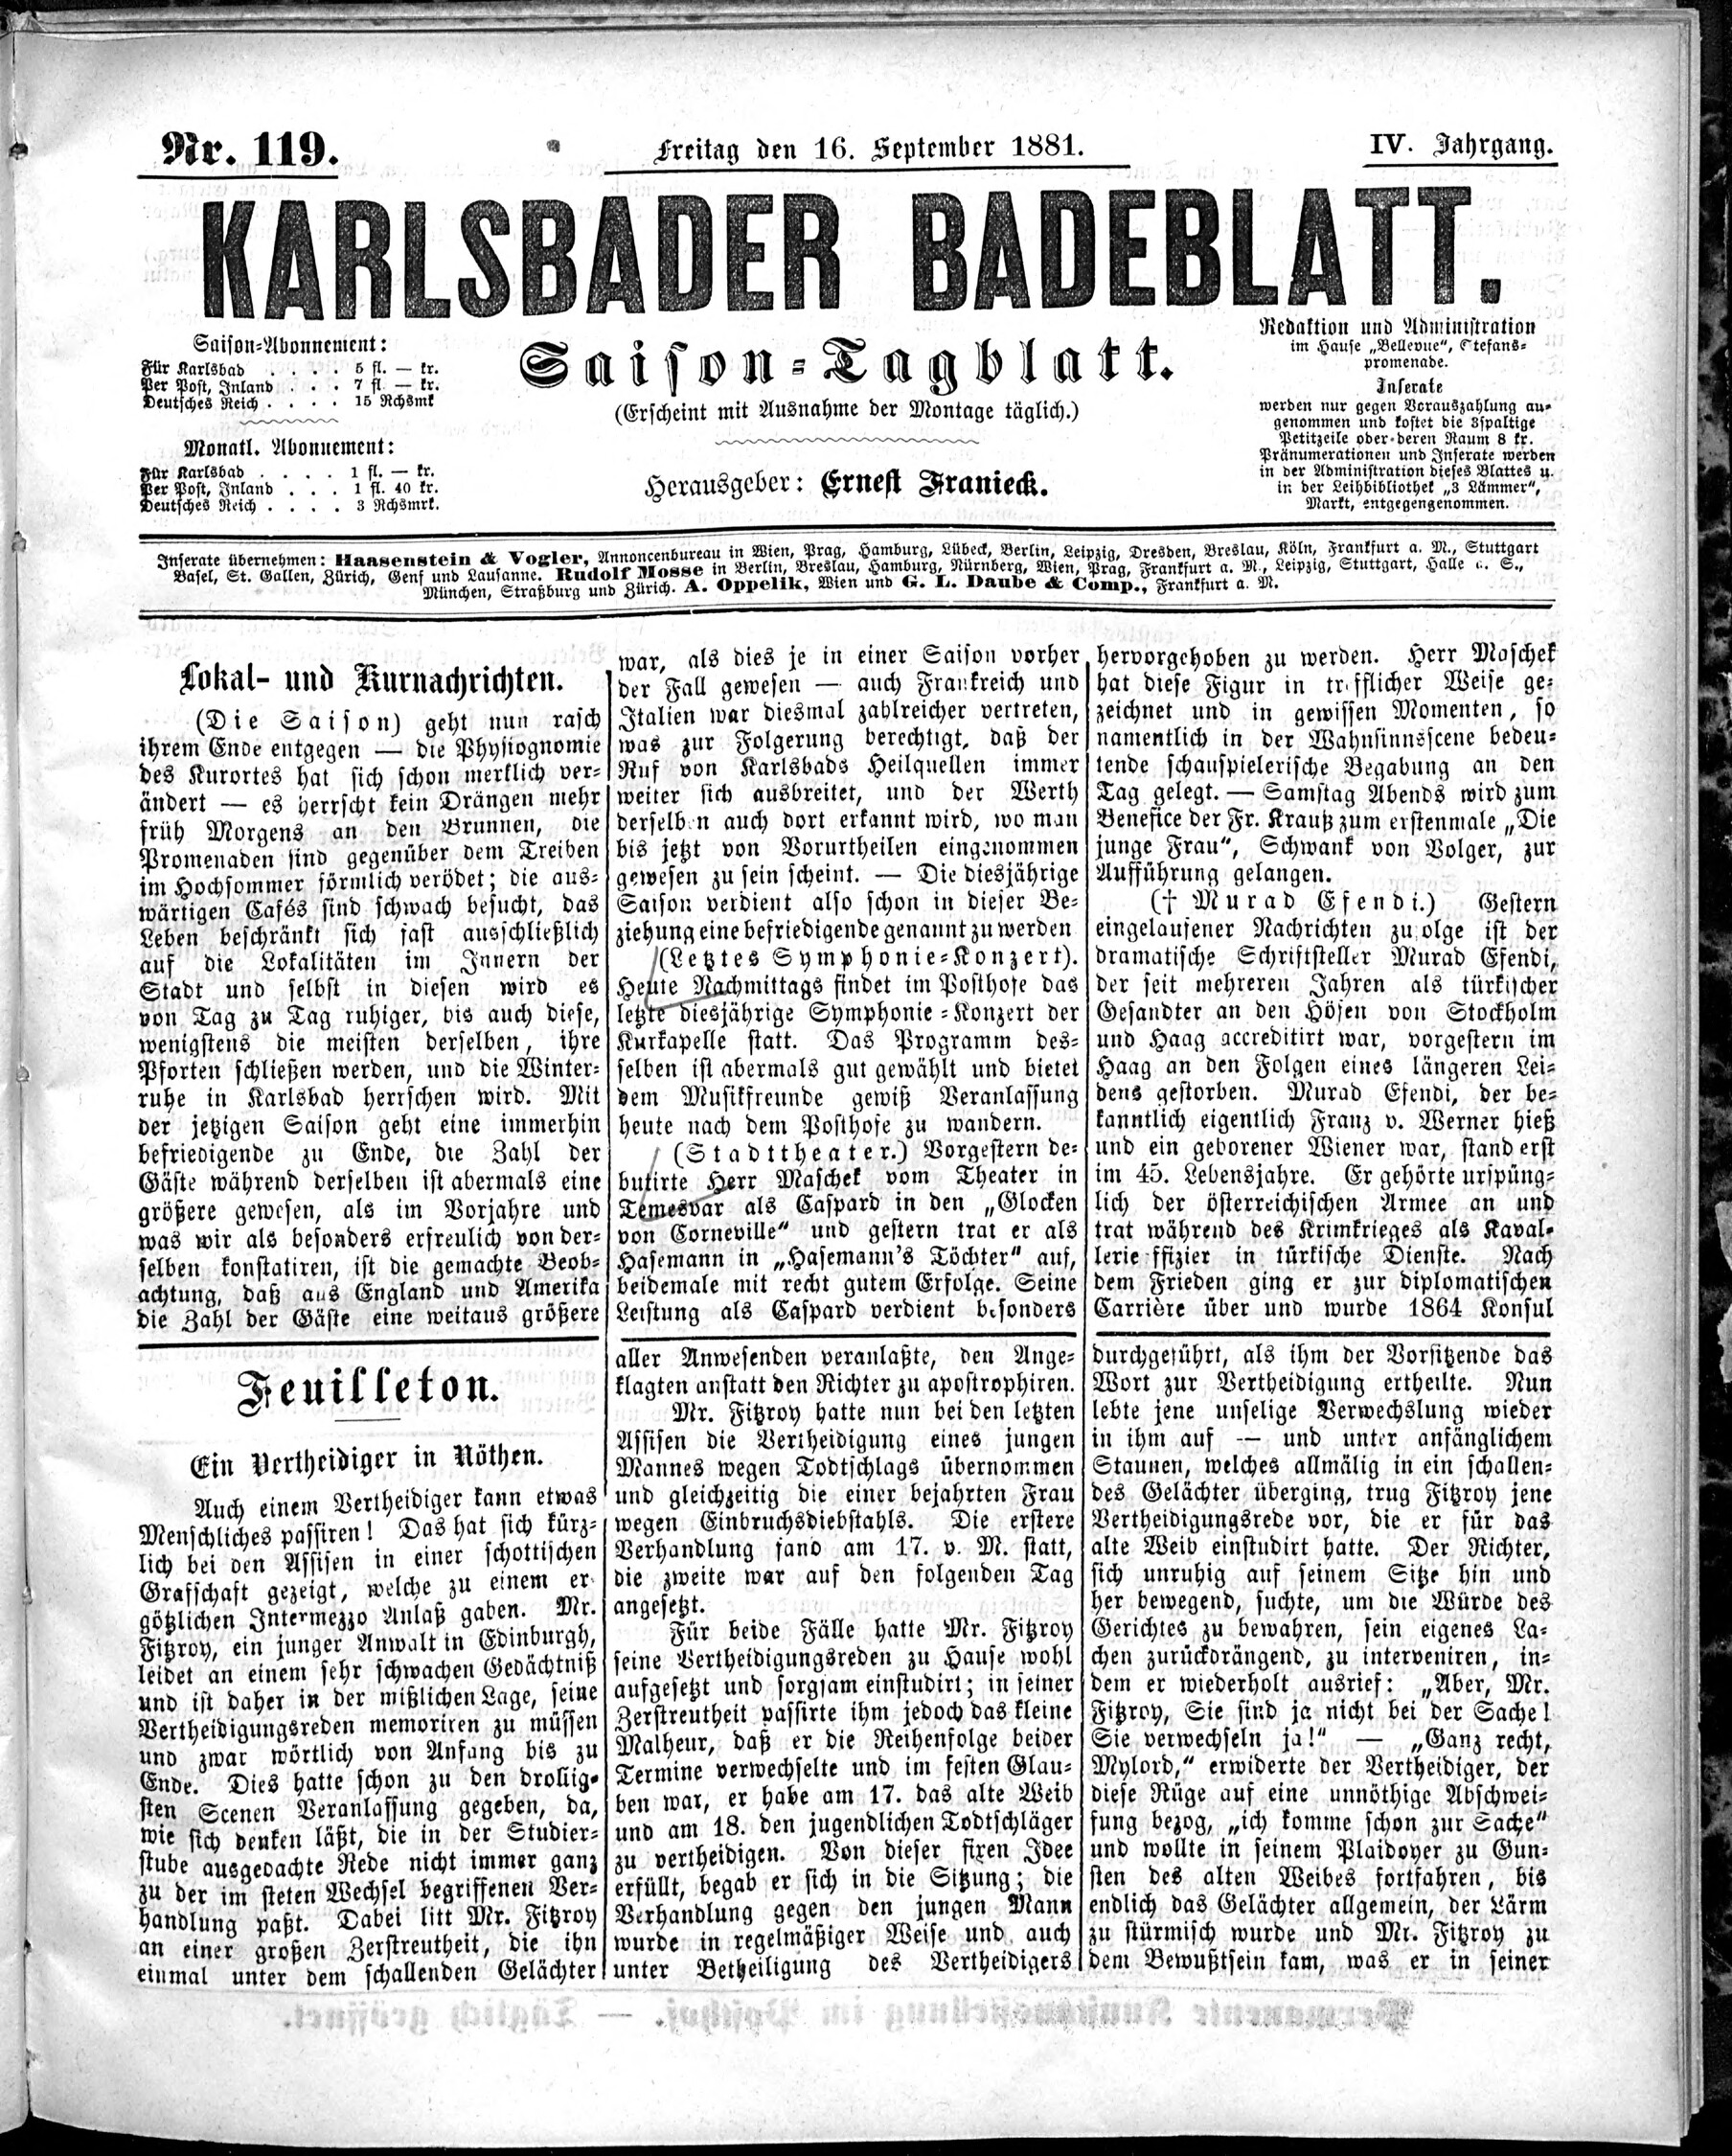 1. karlsbader-badeblatt-1881-09-16-n119_2425